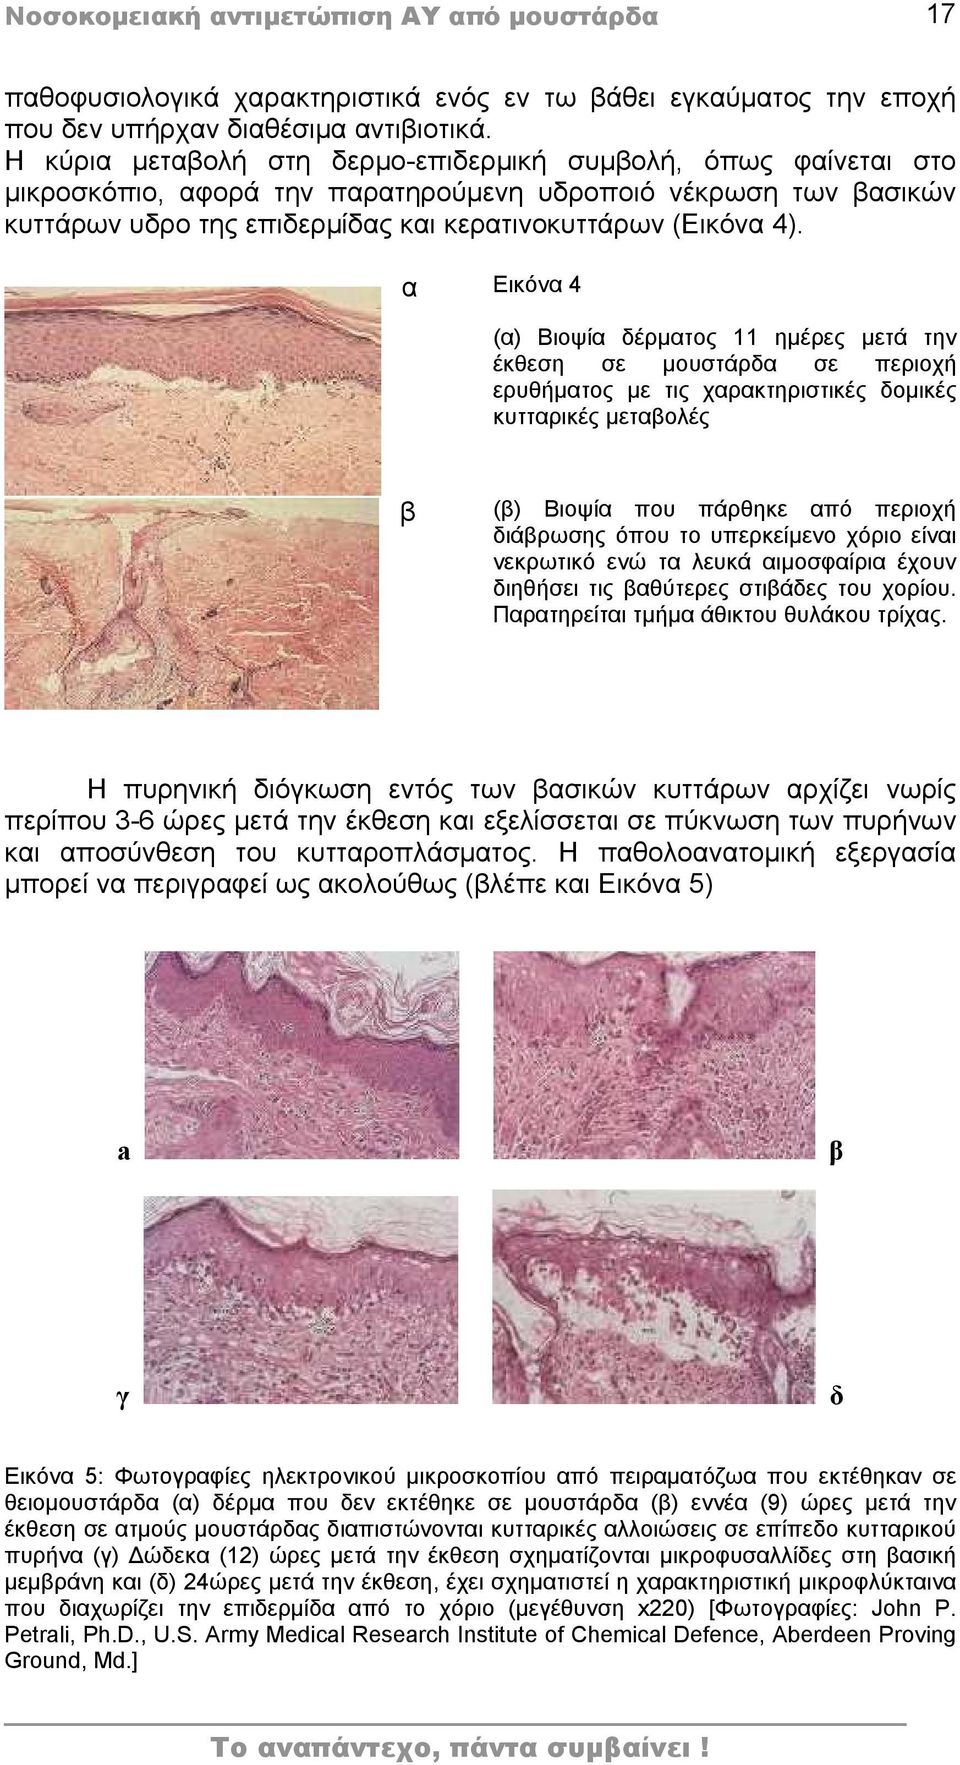 α Εικόνα 4 (α) Βιοψία δέρματος 11 ημέρες μετά την έκθεση σε μουστάρδα σε περιοχή ερυθήματος με τις χαρακτηριστικές δομικές κυτταρικές μεταβολές β (β) Βιοψία που πάρθηκε από περιοχή διάβρωσης όπου το